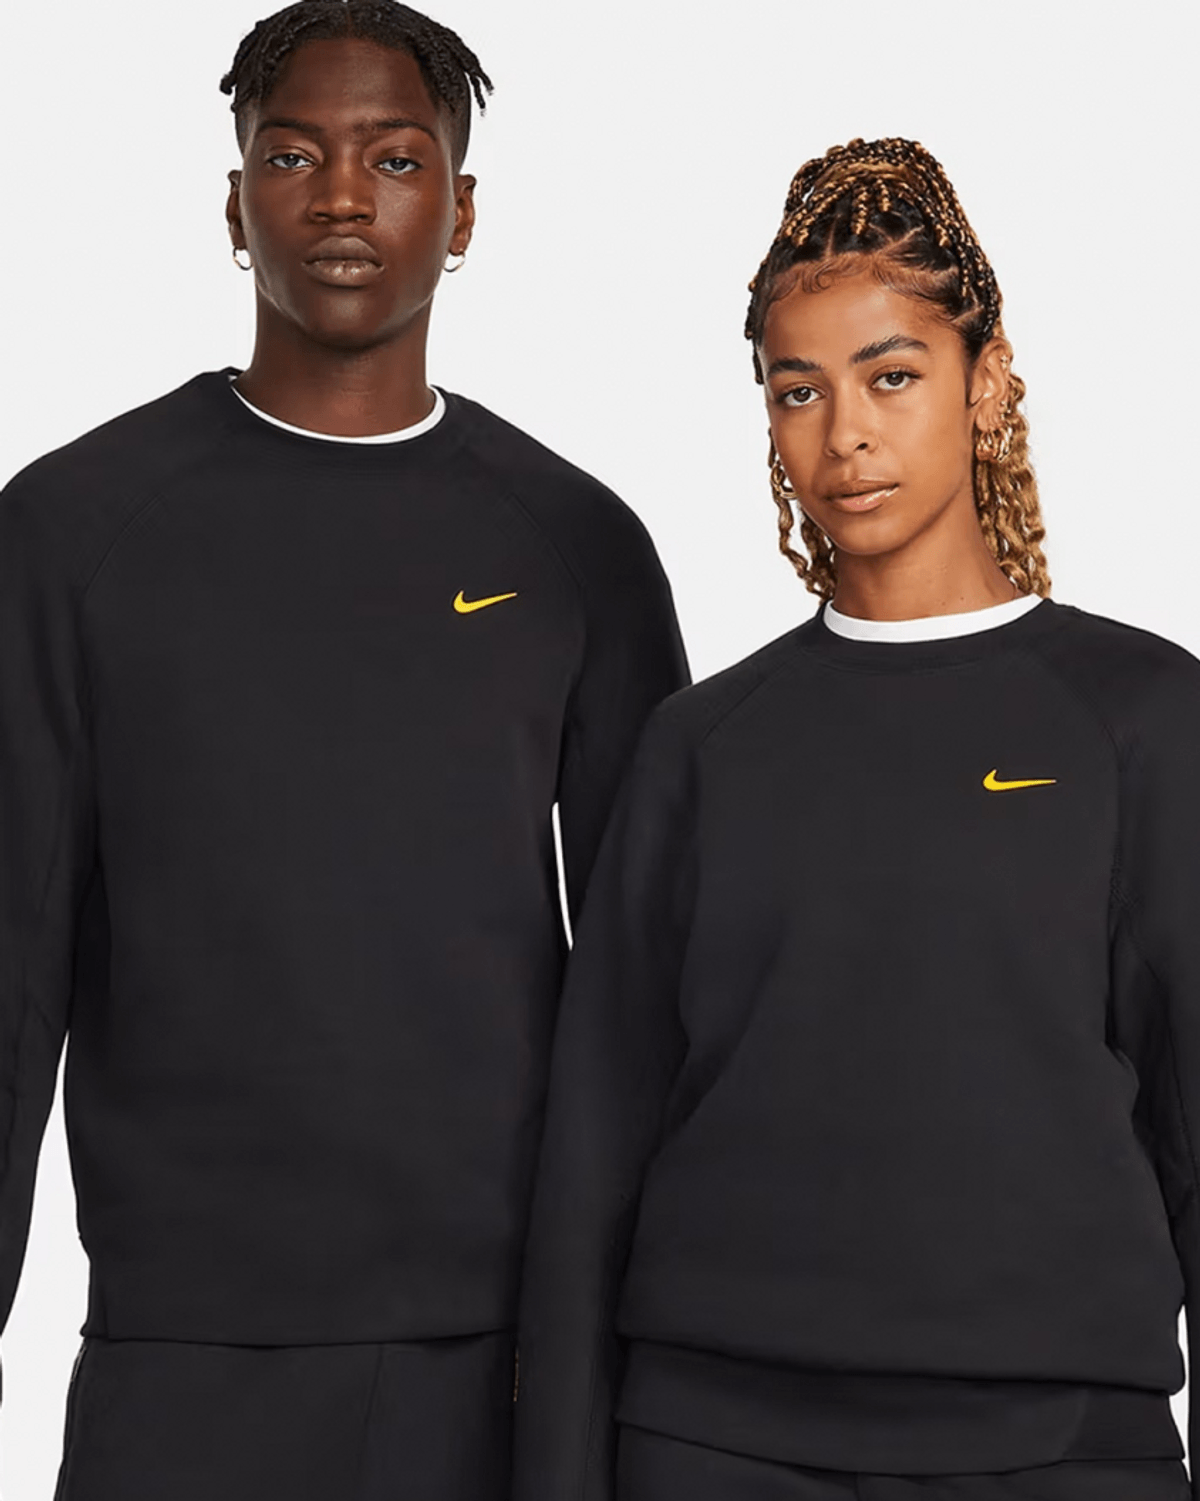 The NOCTA x Nike Tech Fleece Is Coming In Black